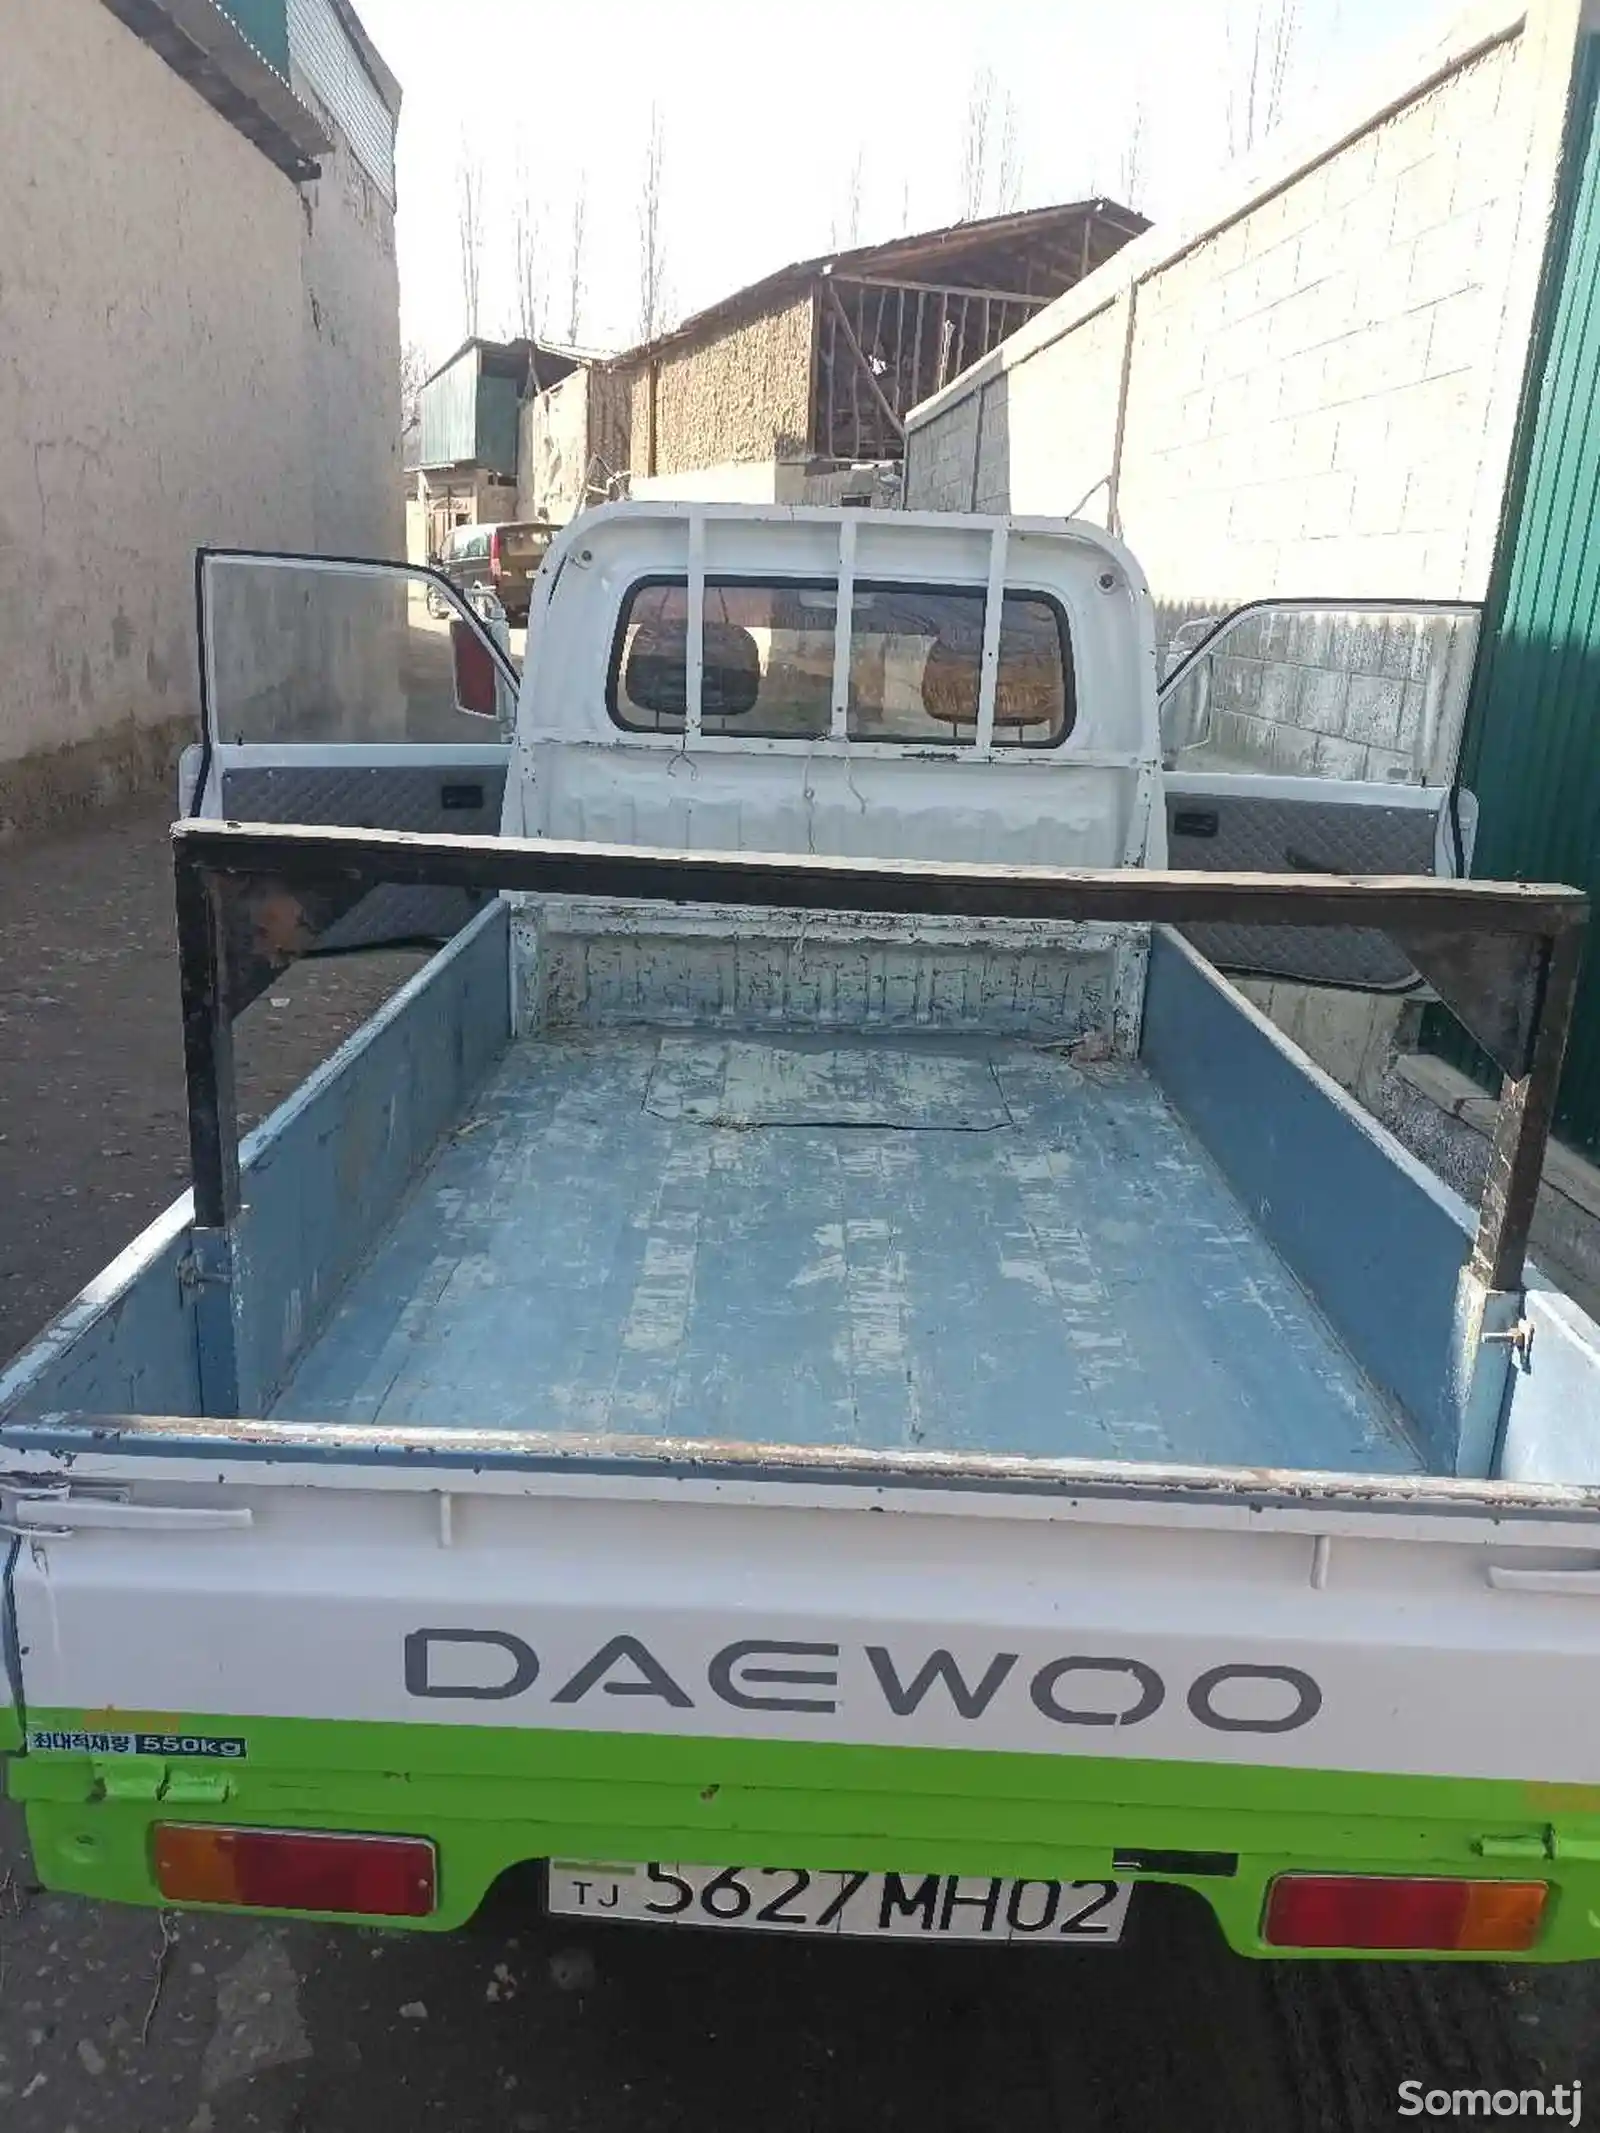 Бортовой автомобиль Daewoo Labo, 1997-2